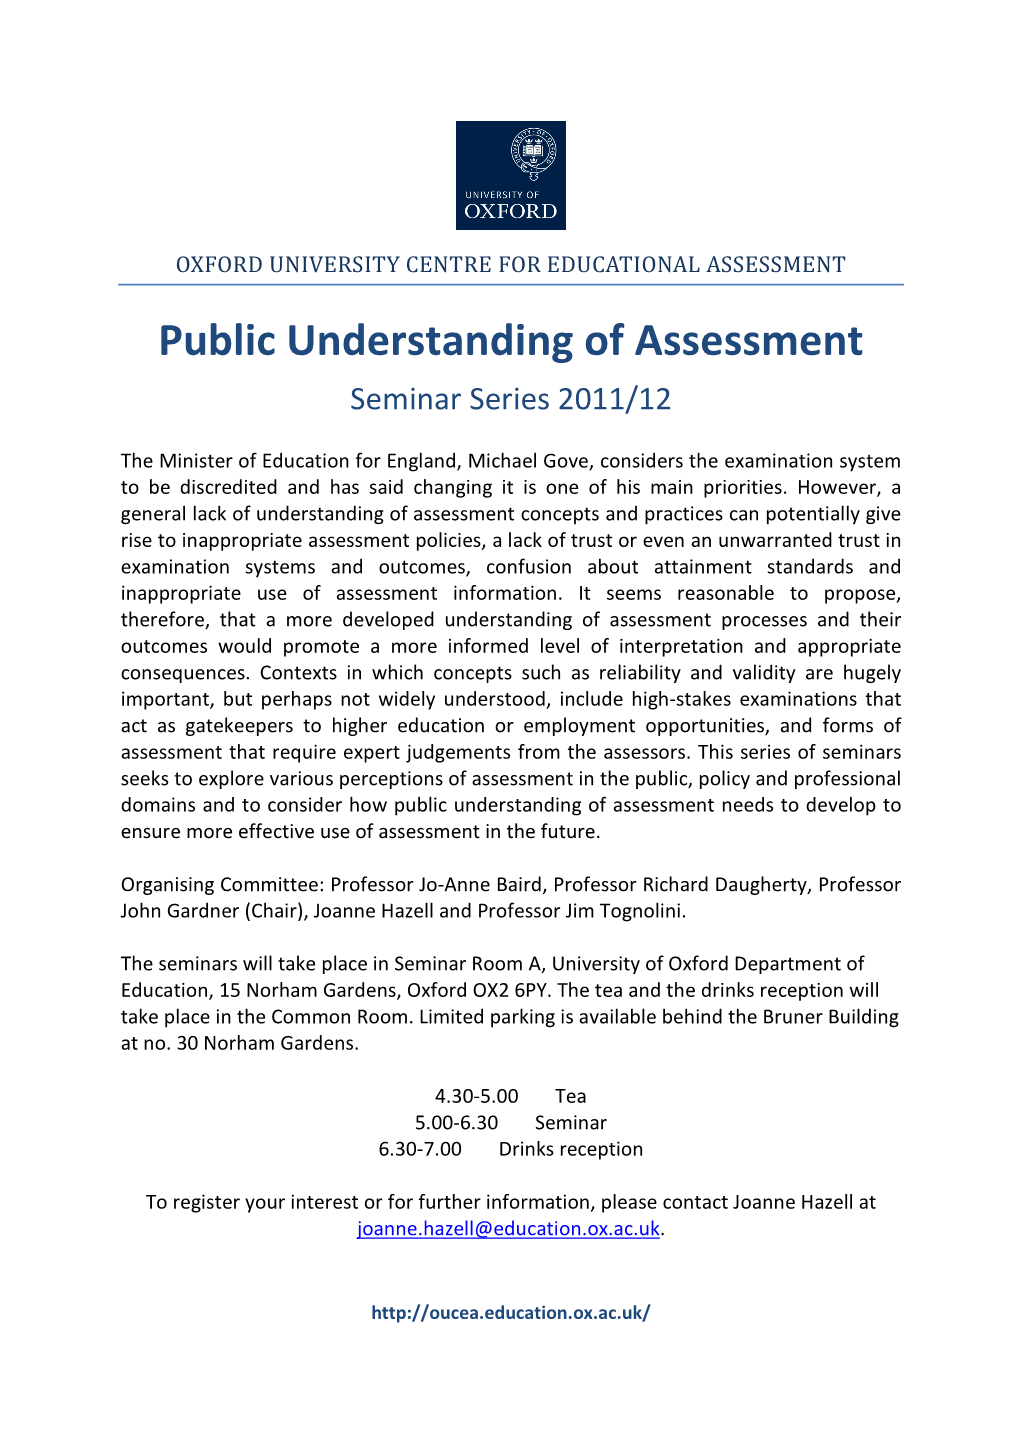 Public Understanding of Assessment Seminar Series 2011/12